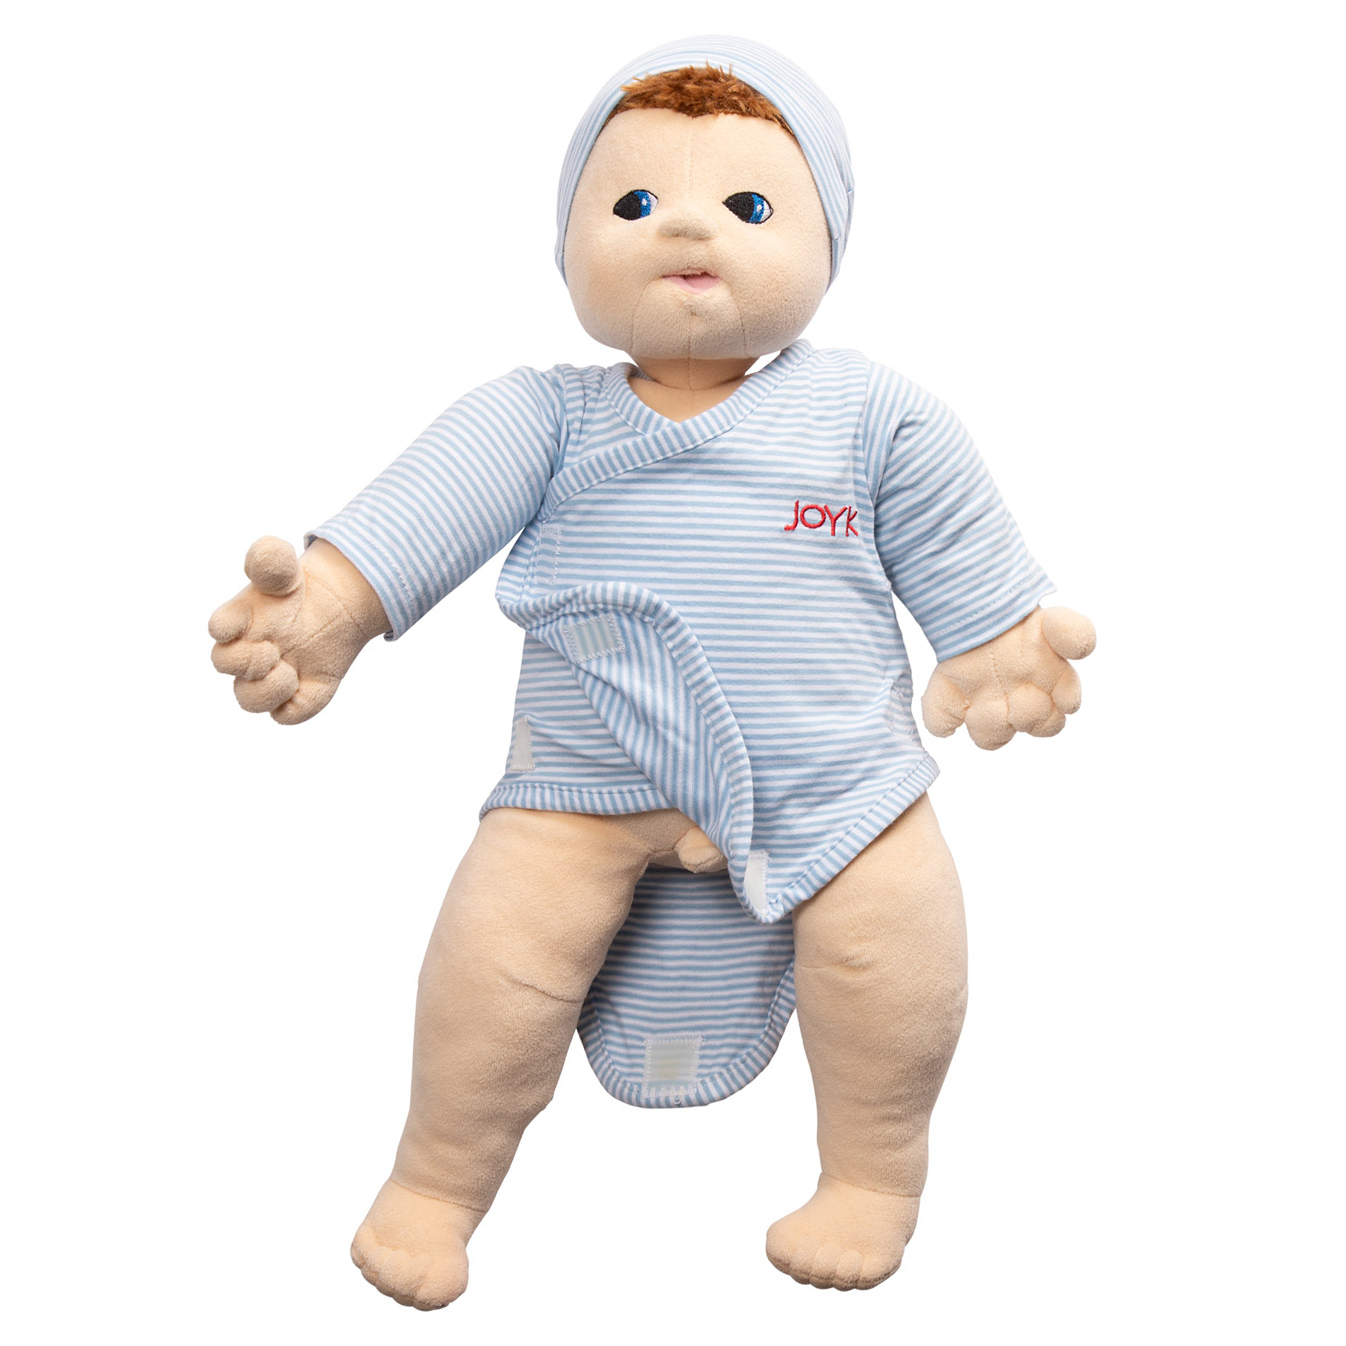 Joyk dolls - empathy doll baby Elias